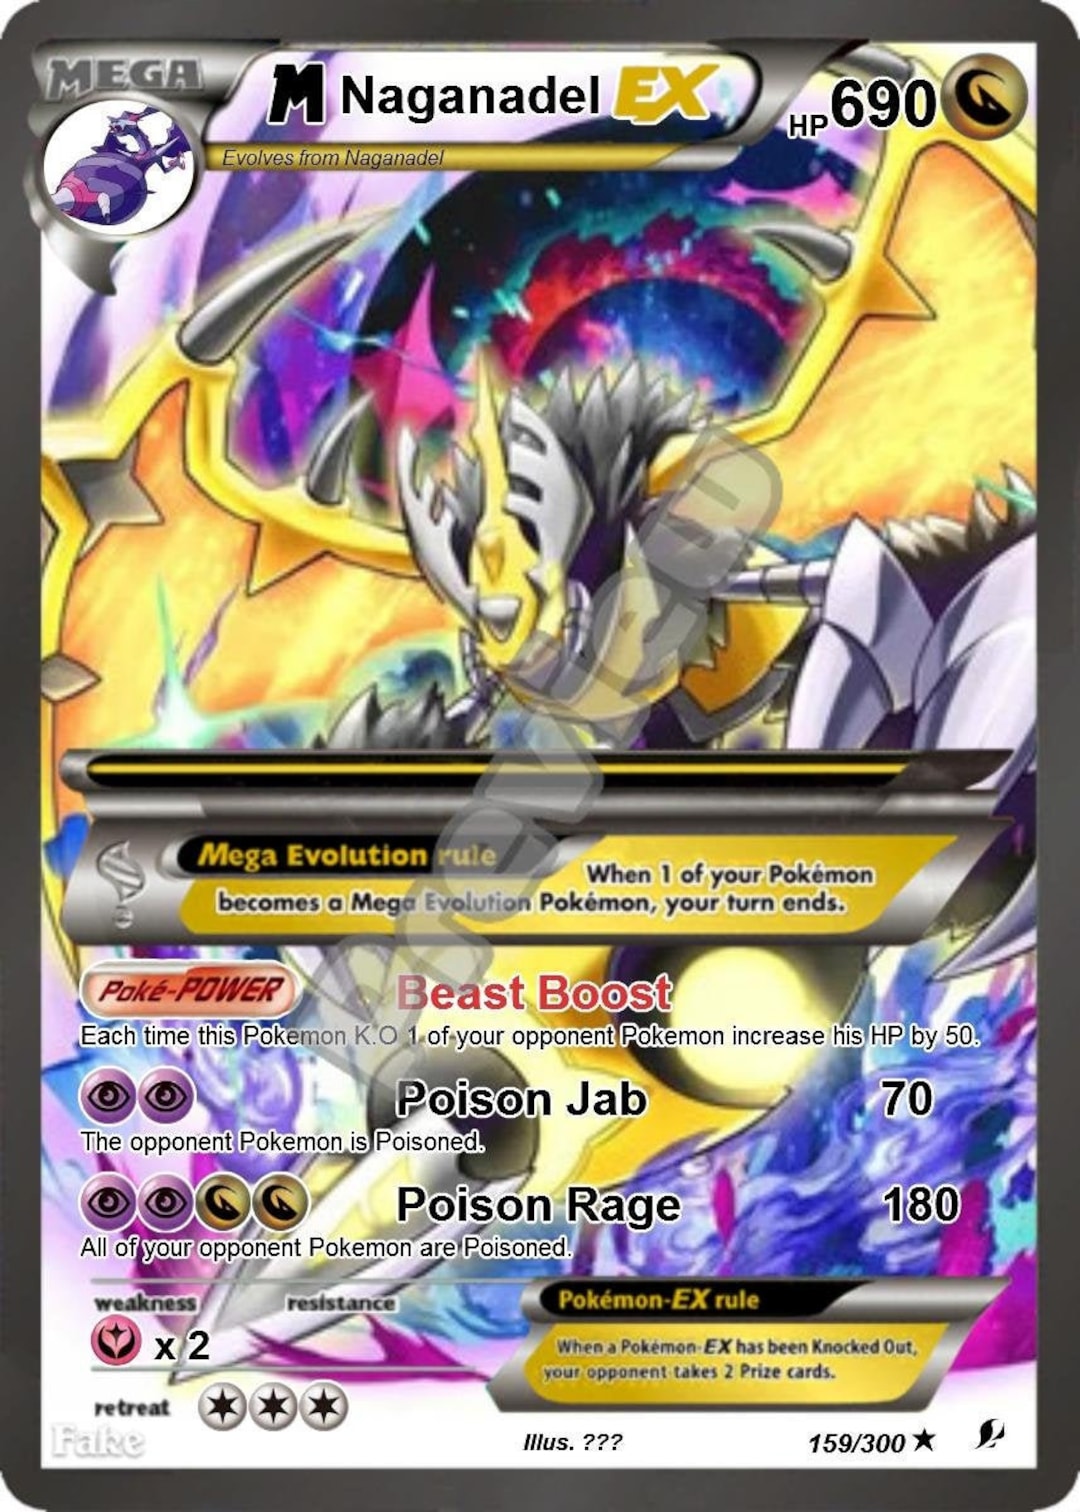 Arceus the Elemental Progenitor VMAX Pokemon Card 